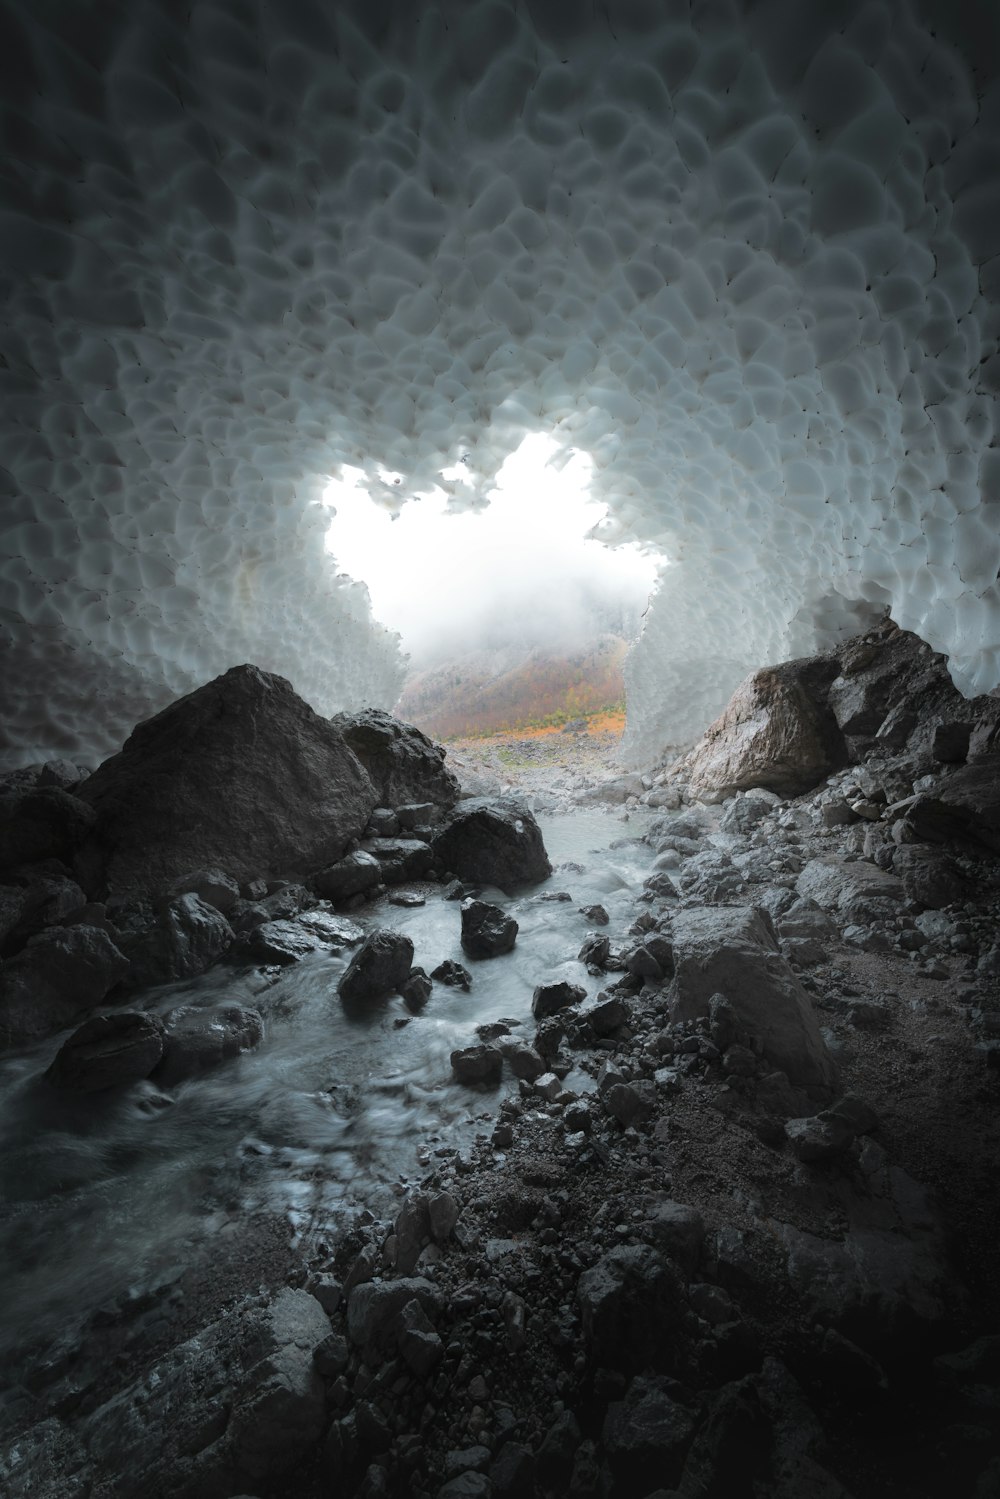 Une grotte remplie de rochers et d’eau sous un ciel nuageux